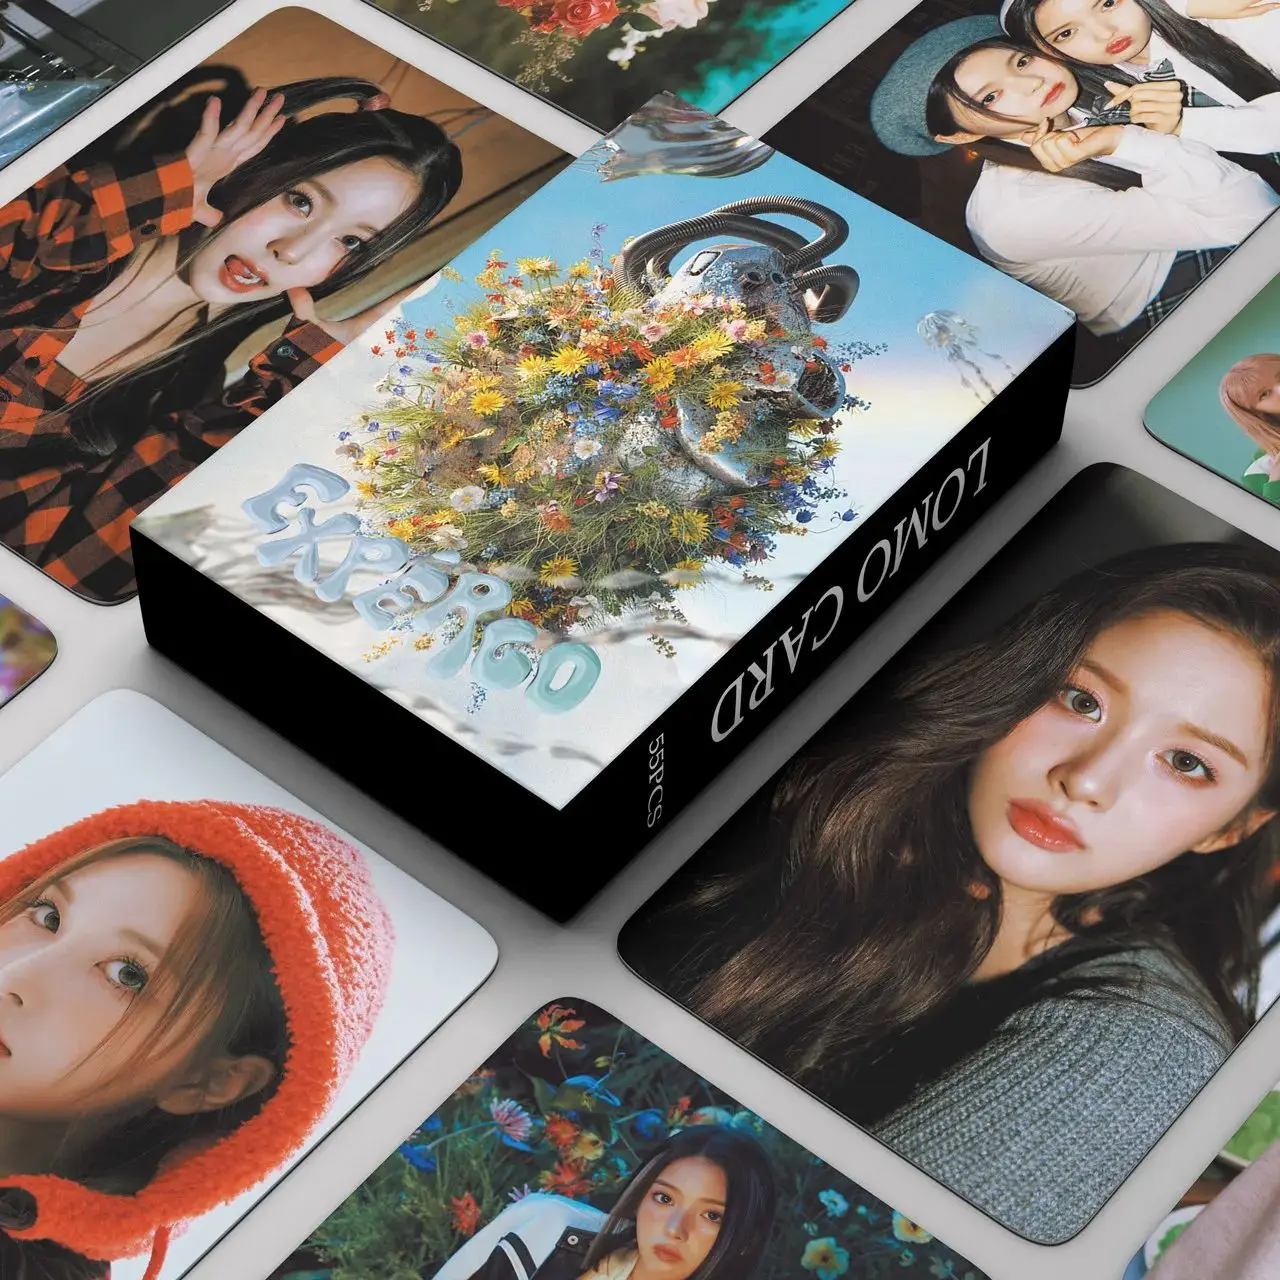 

55 шт./набор Kpop NMIXX Expergo фотокарты K-pop Idol Fans LOMO Cards коллекция Expergo новый альбом для девочек Поклонники Коллекция Idol подарок